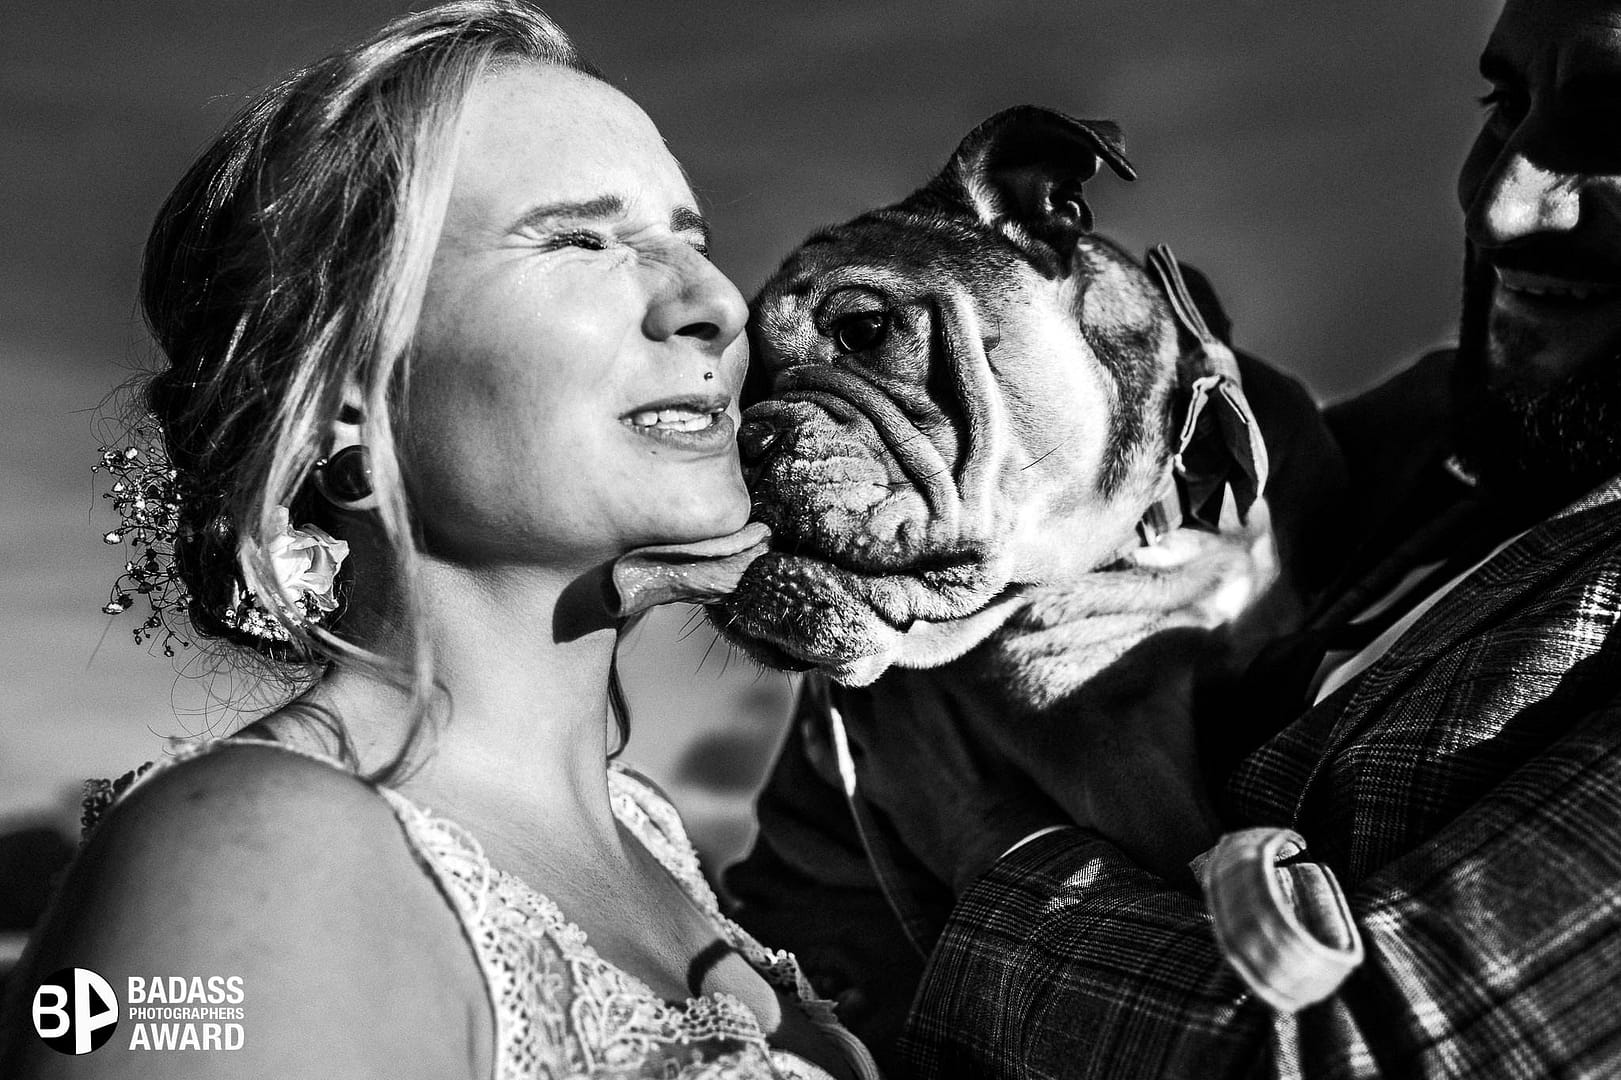 Braut wird von ihrer Bulldogge durchs Gesicht geleckt - Gewinnerbild Badass Award